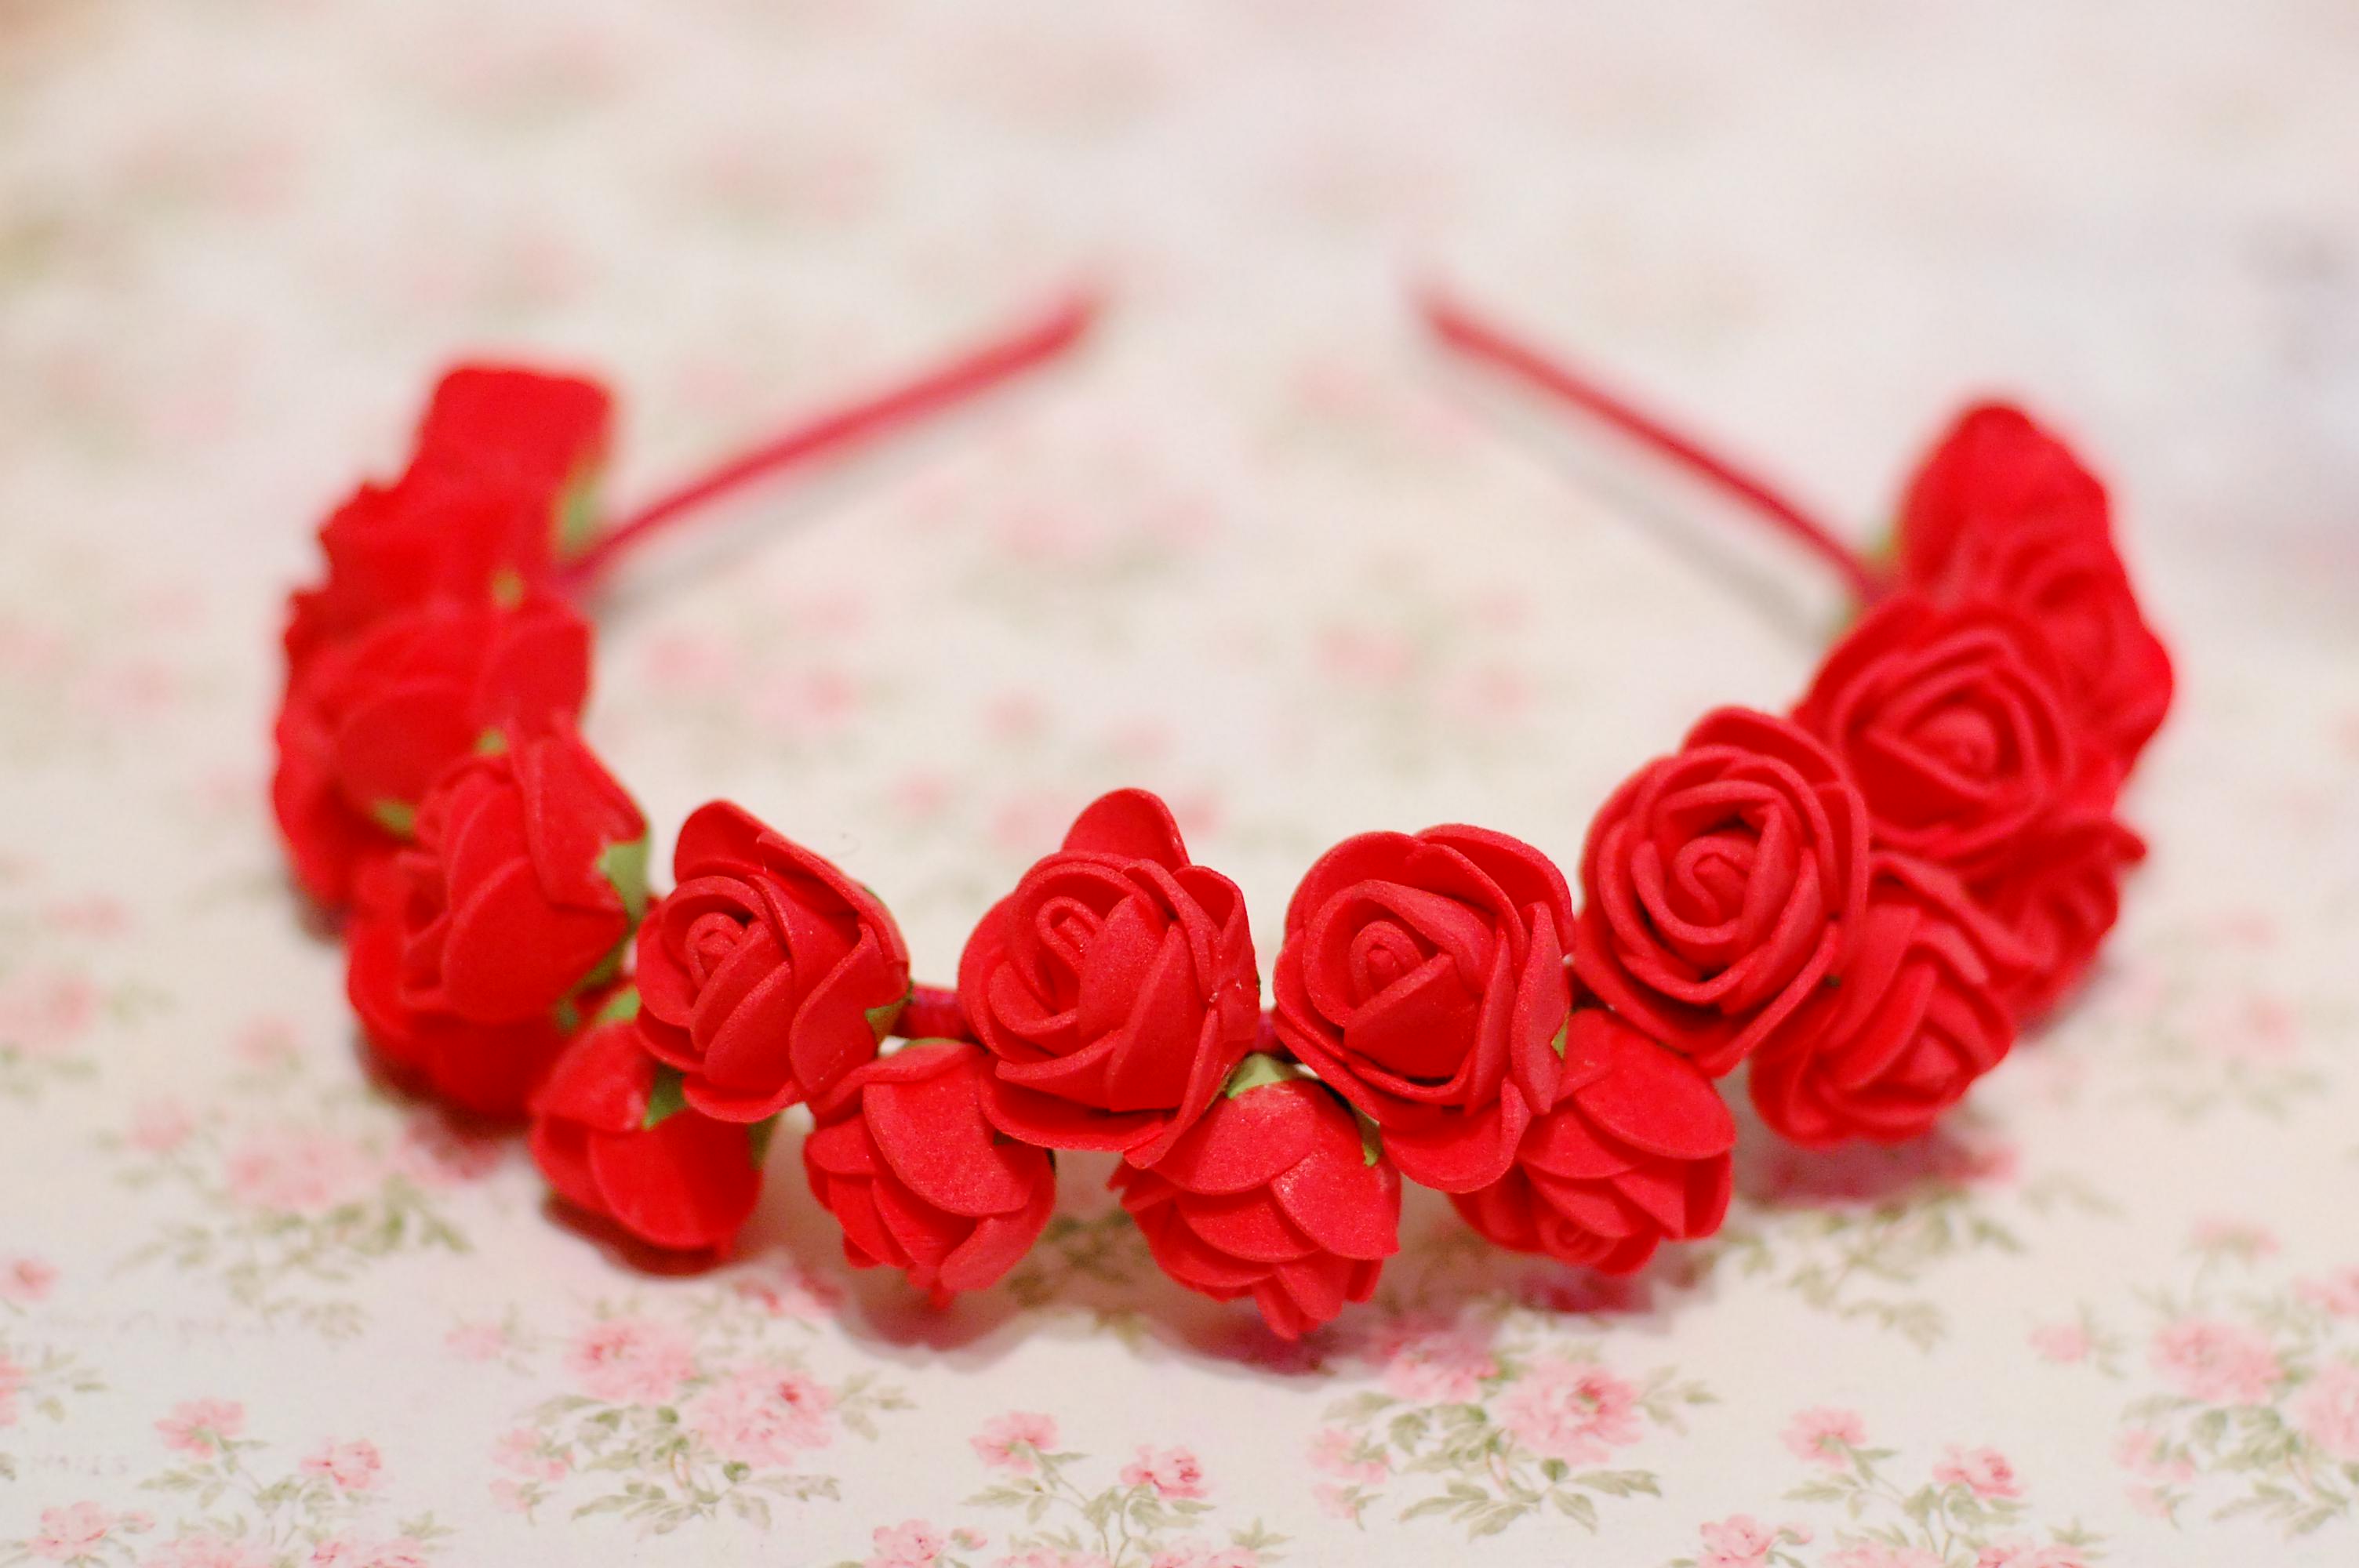 Обручи с розами - - купить в Украине на garant-artem.ru